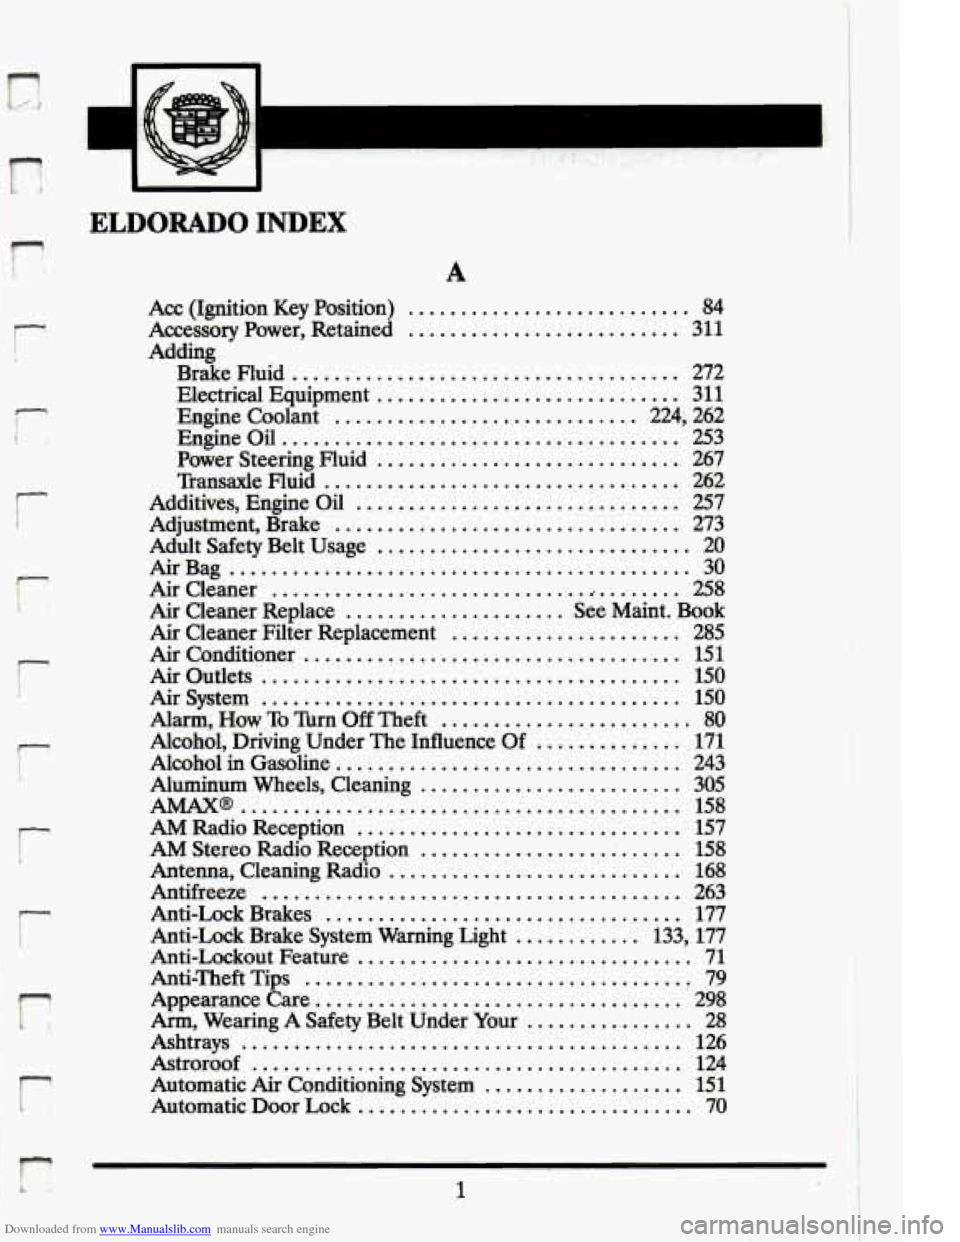 CADILLAC ELDORADO 1994 10.G Owners Manual Downloaded from www.Manualslib.com manuals search engine r . 
r 
r 
-r 
. r 
. r 
I 
11 
" p 
ELDORADO INDEX 
A 
Acc  (Ignition  Key  Position) ........................... 84 
Accessory  Power.  Reta